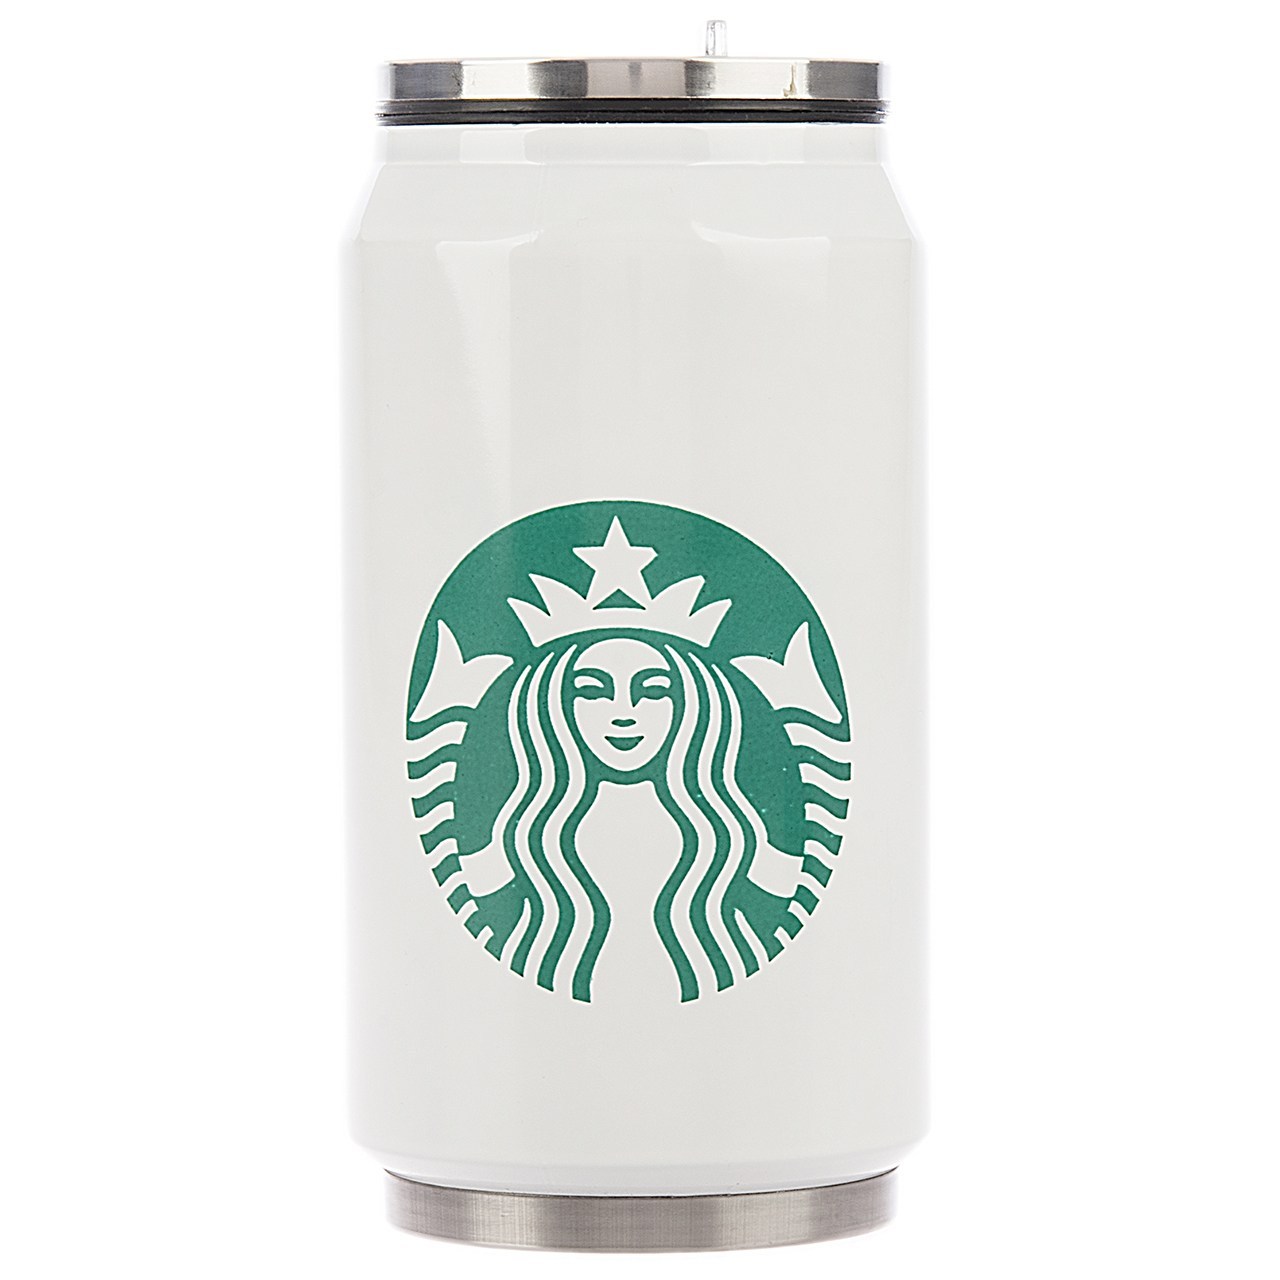 فلاسک کولاباتل مدل Starbucks Mid Logo ظرفیت 0.5 لیتر